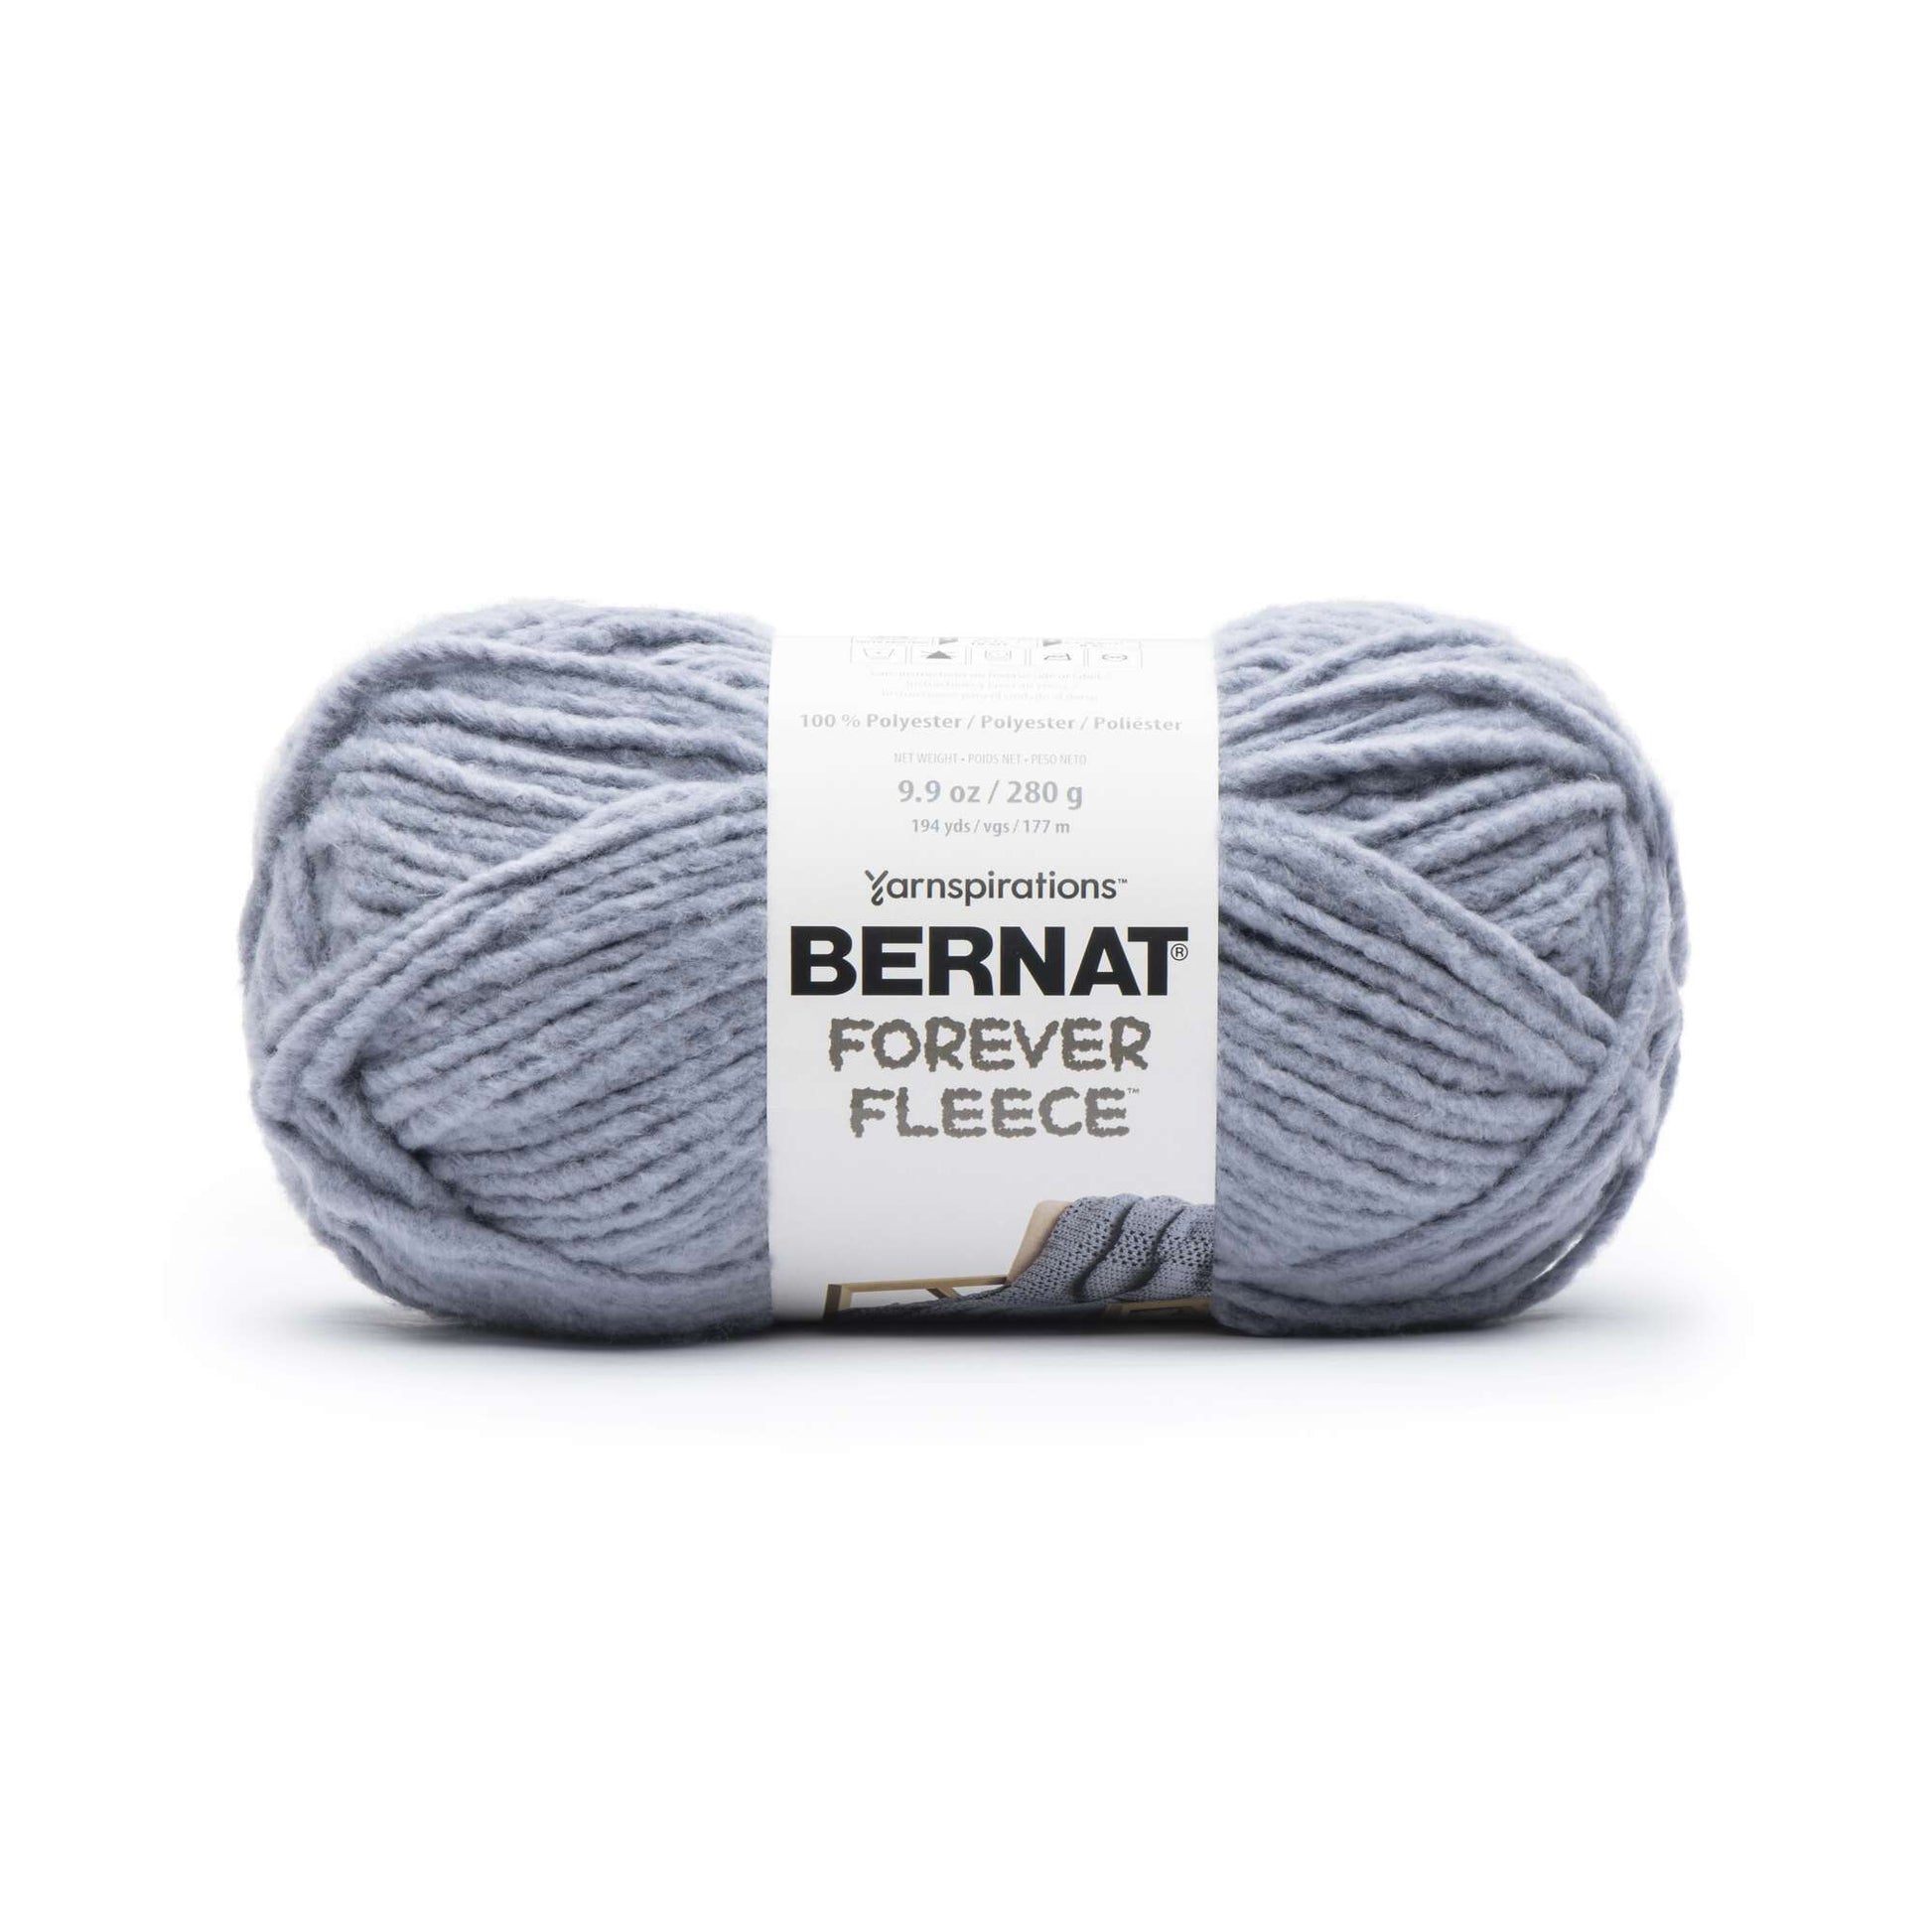 Bernat Forever Fleece Yarn - Patchouli - 20281713